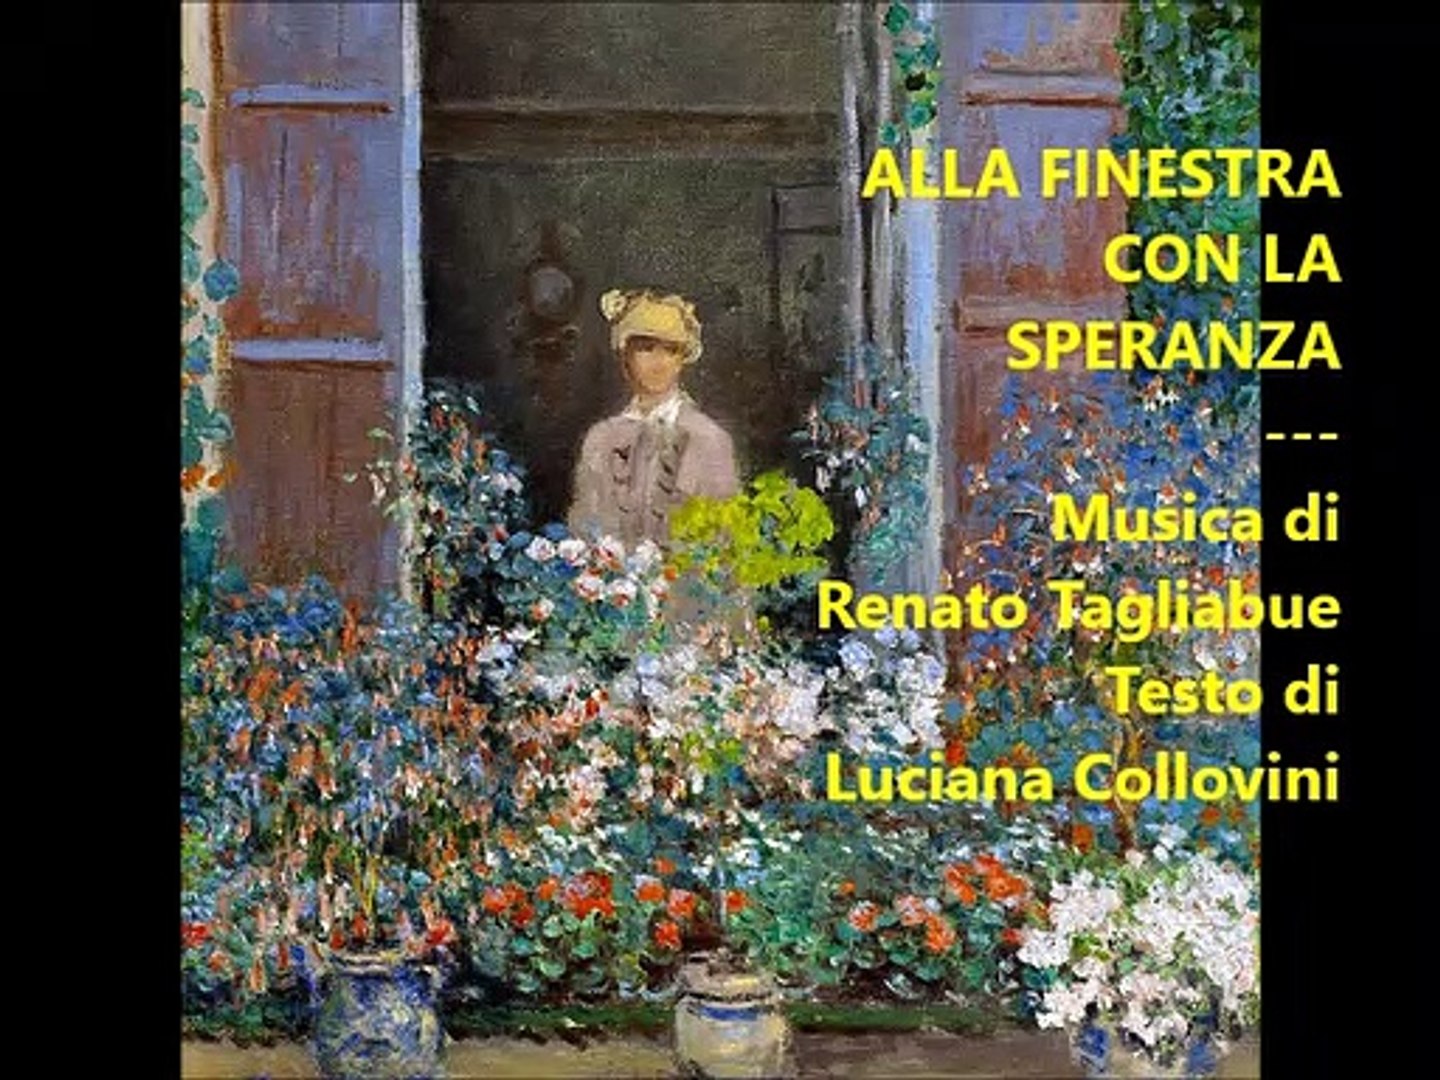 ALLA FINESTRA CON LA SPERANZA - Testo di Luciana Collovini - Musica di  Renato Tagliabue - Video Dailymotion